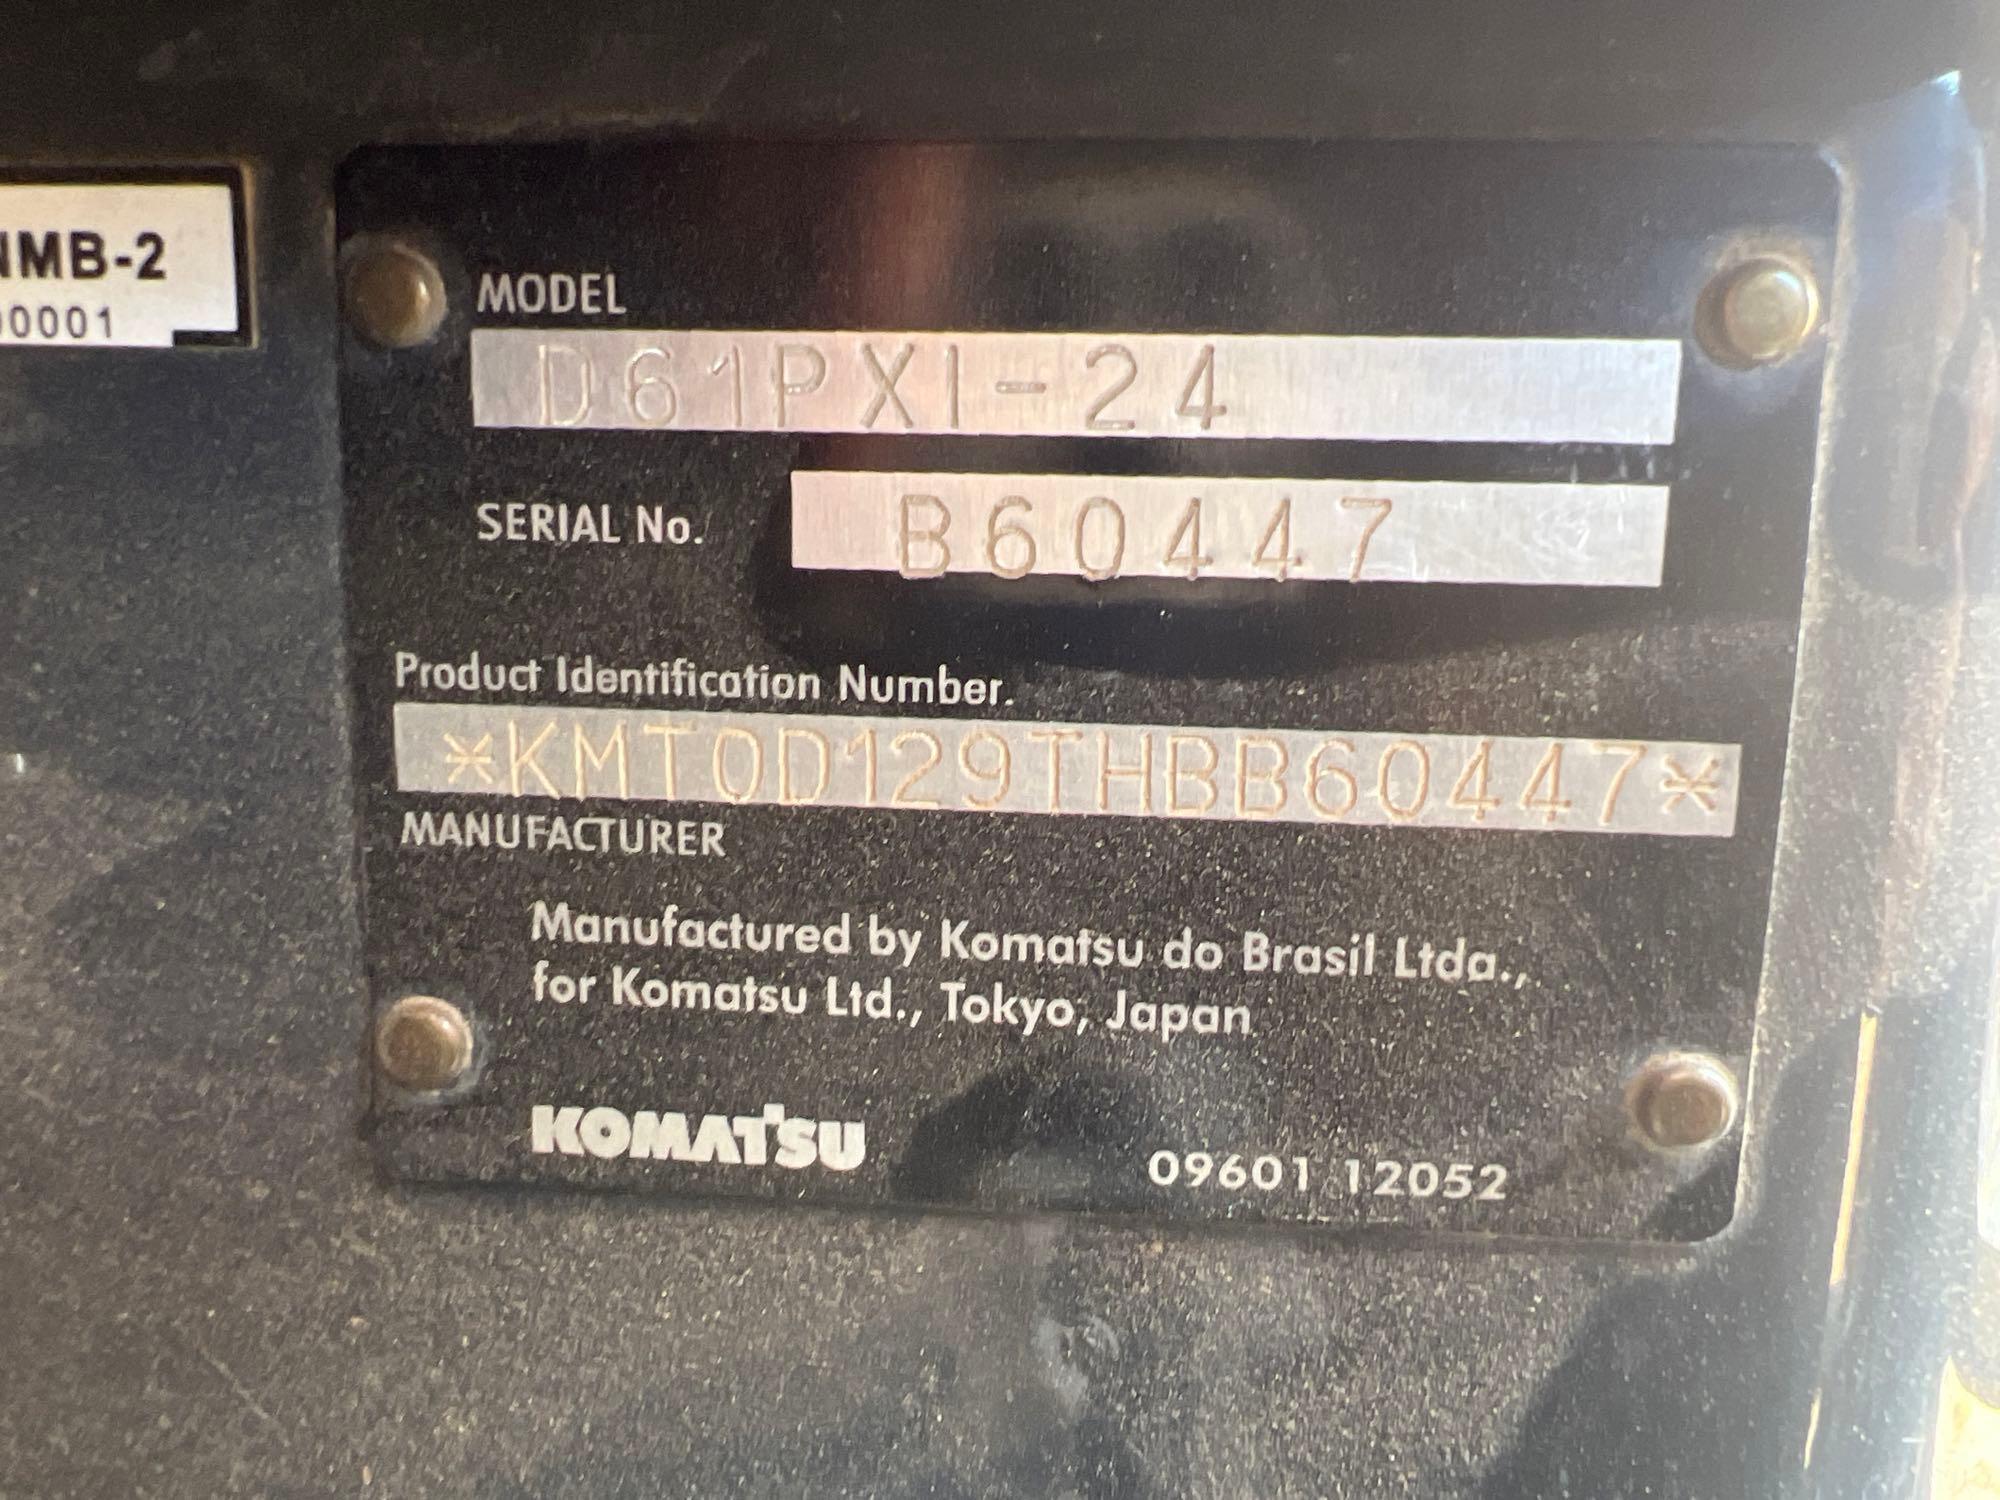 2018 KOMATSU D61PXi-24 CRAWLER DOZER